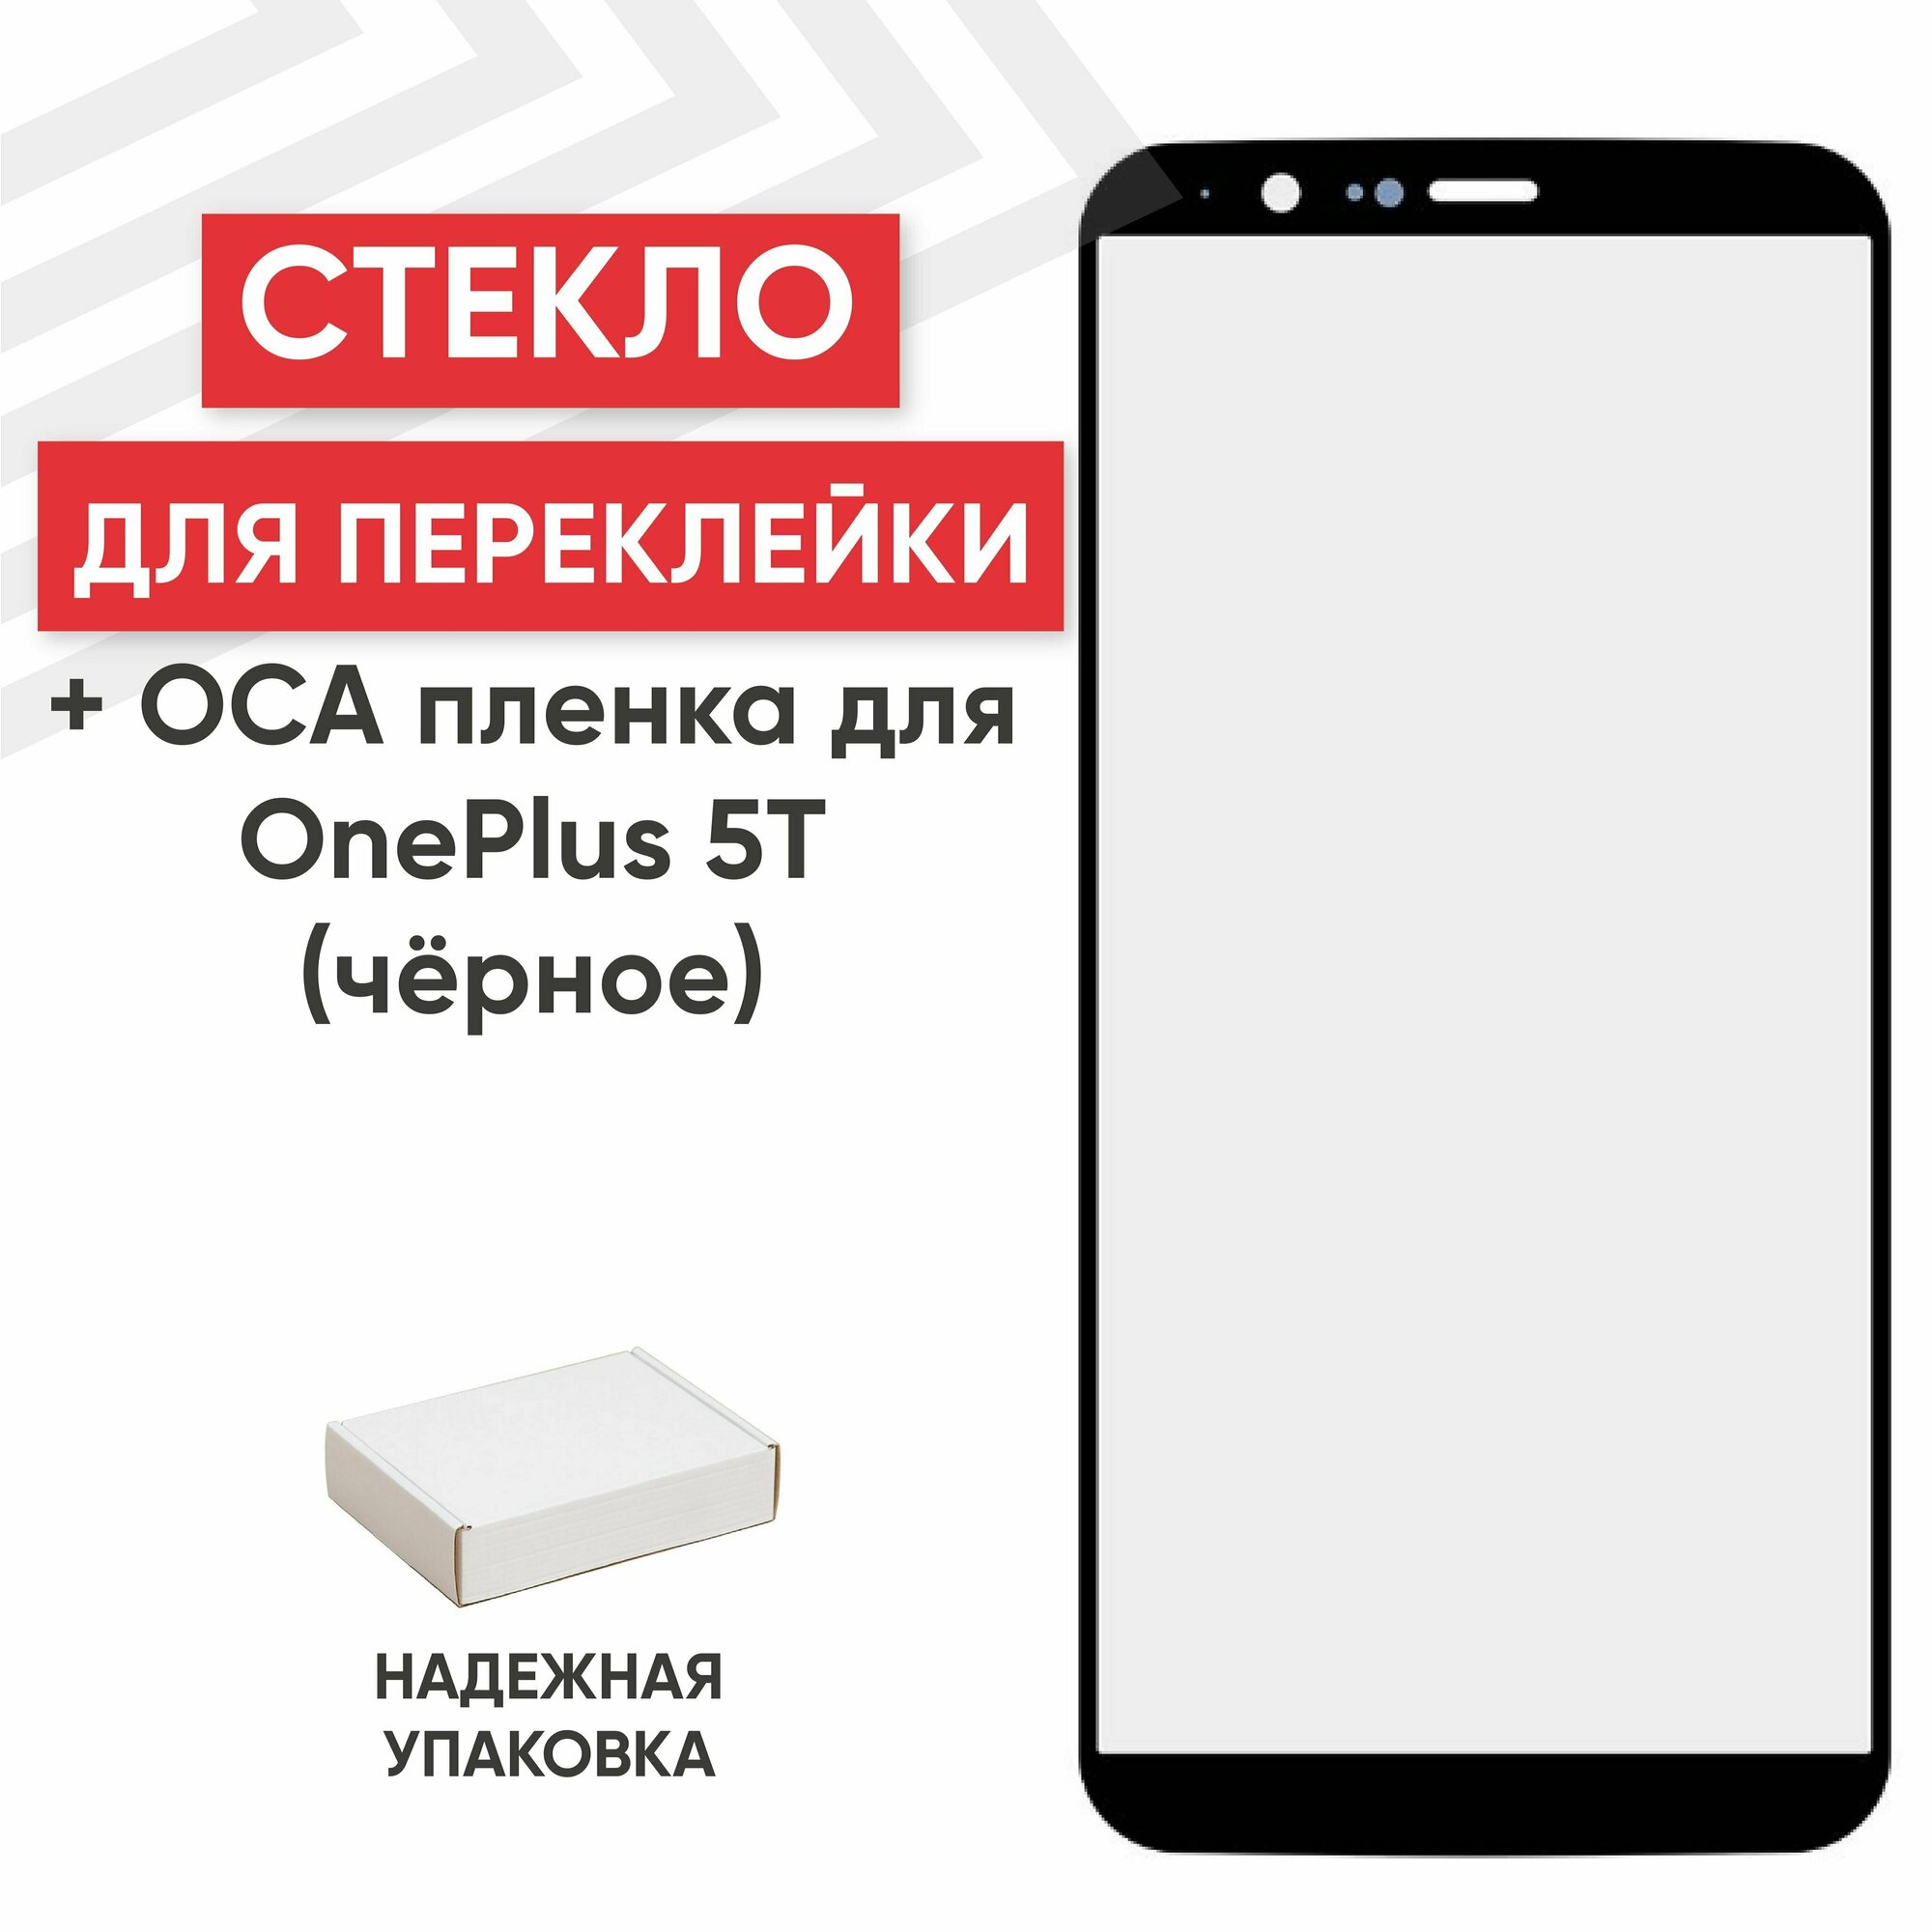 Стекло переклейки дисплея c OCA пленкой для мобильного телефона (смартфона) OnePlus 5T, черное